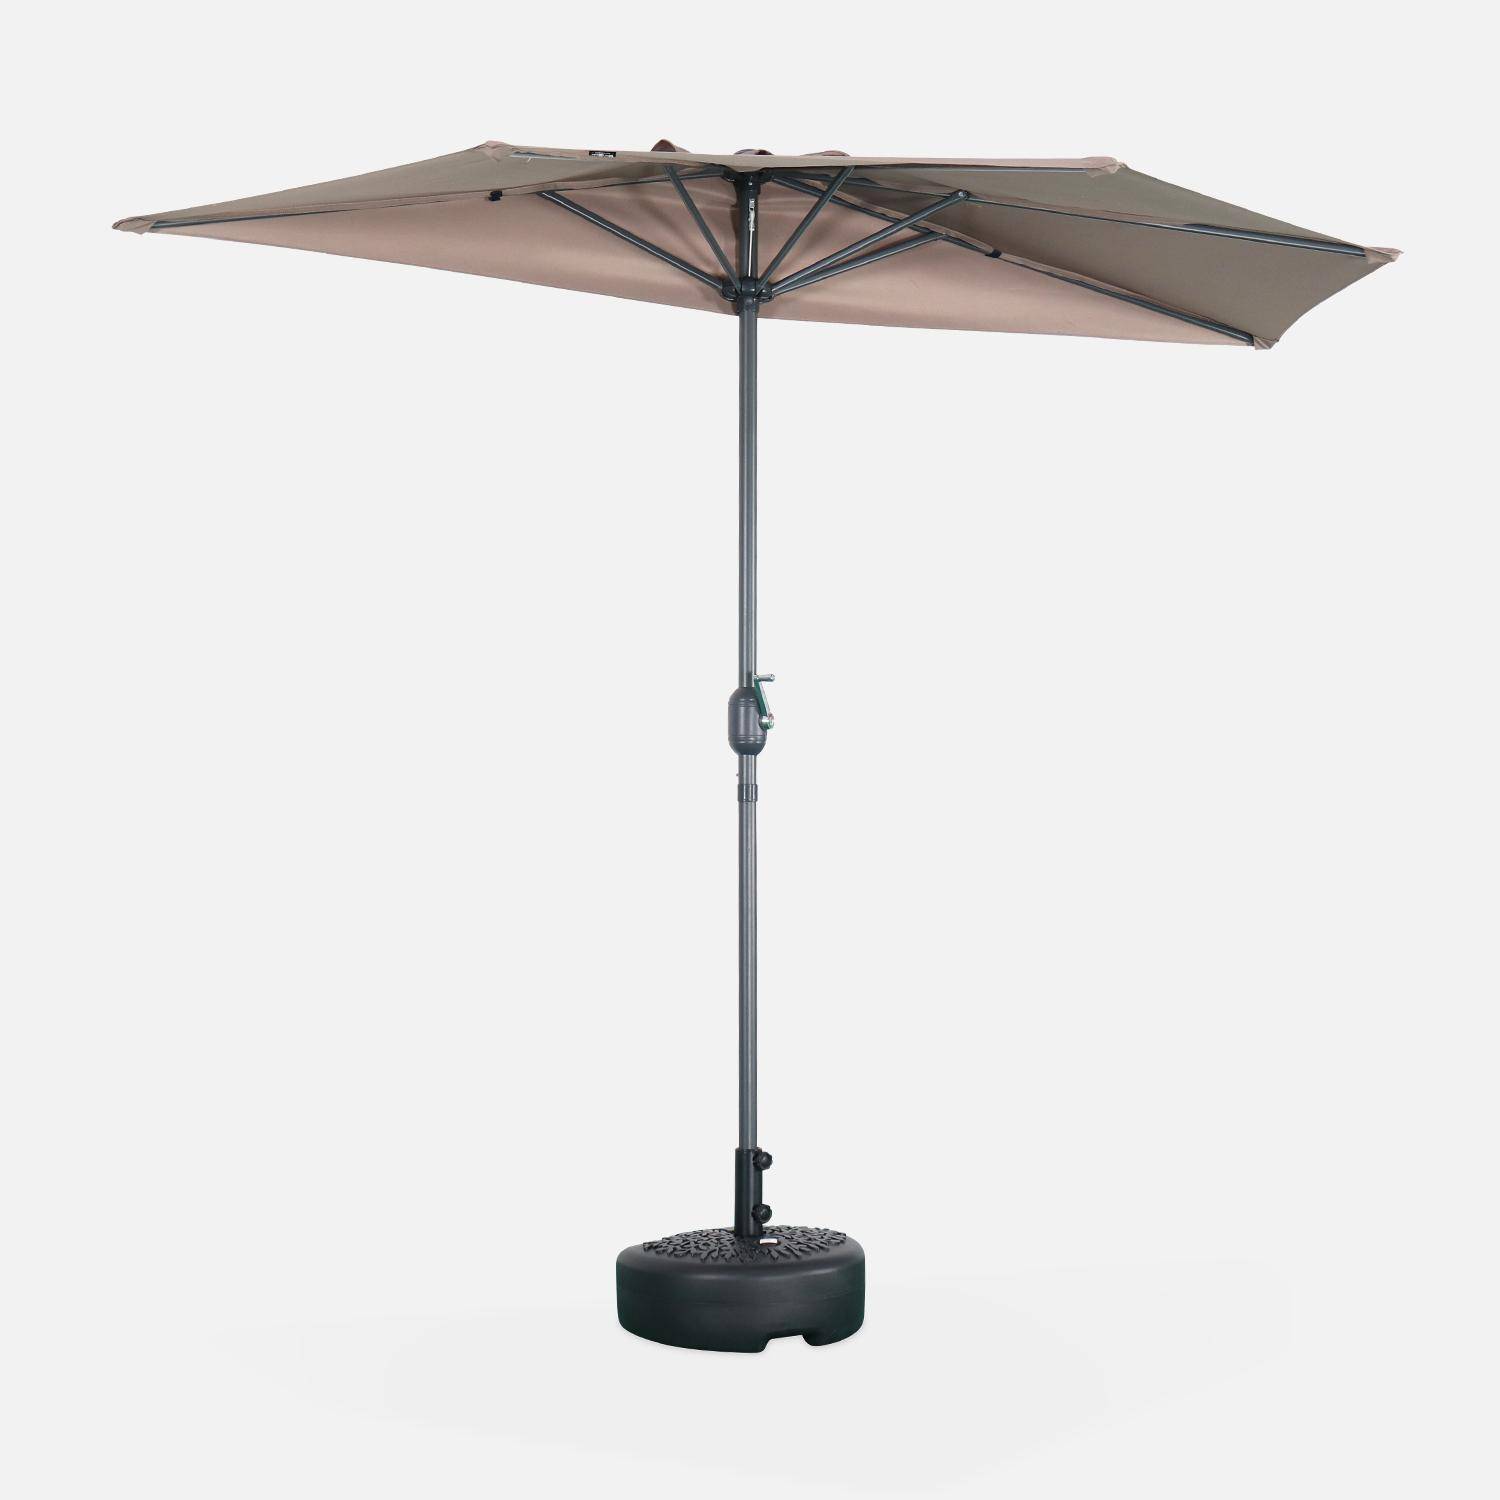 Ombrellone da balcone Ø250cm - CALVI - Mezzo ombrellone dritto, palo in alluminio con manovella, telo bruno/talpa Photo1